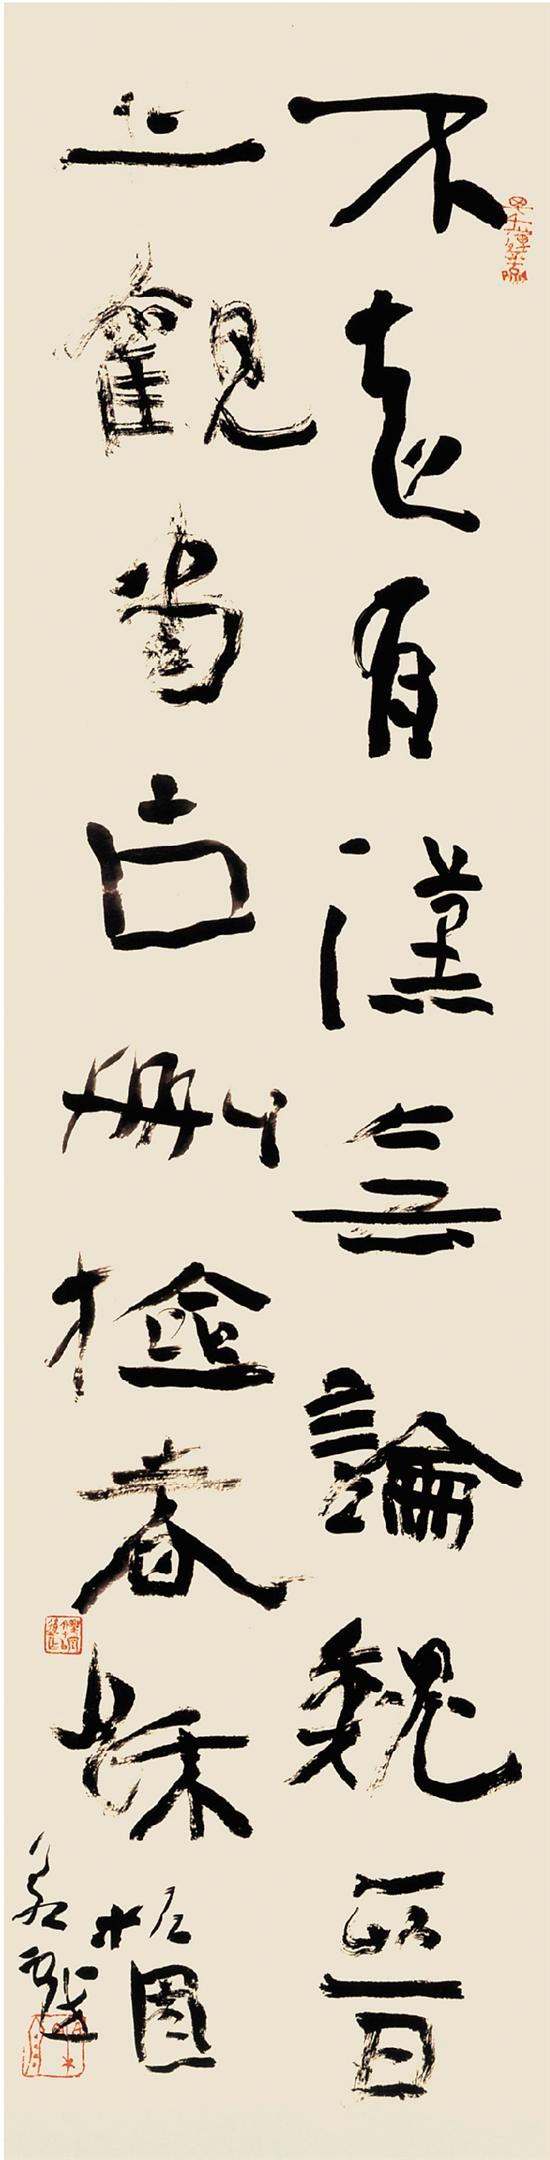 乐泉(江苏 书法